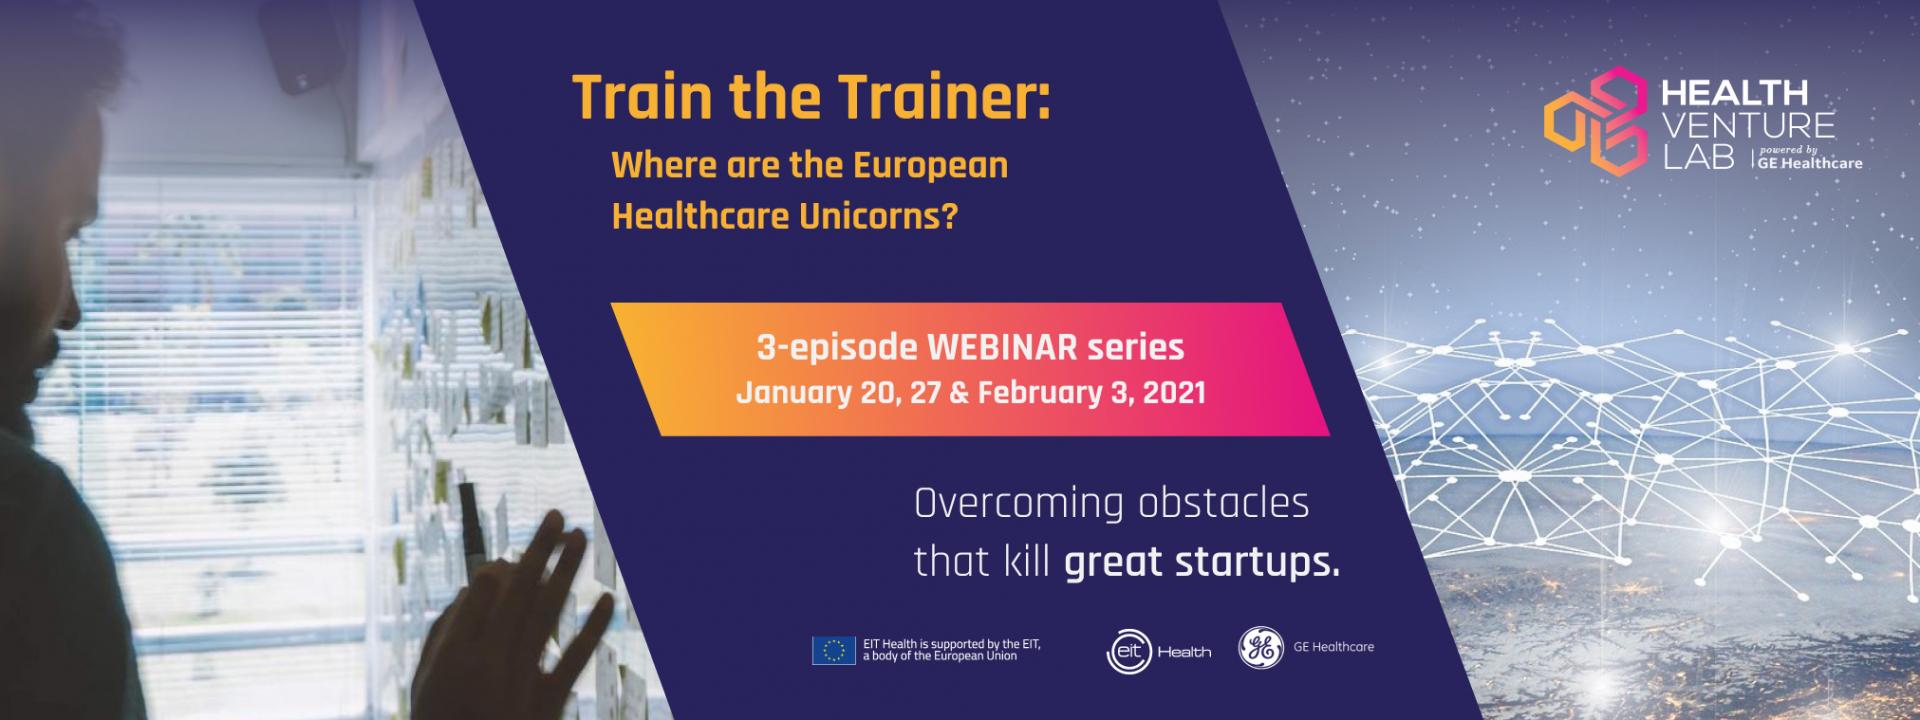 Where are the European Healthcare Unicorns? Train The Trainer webinar